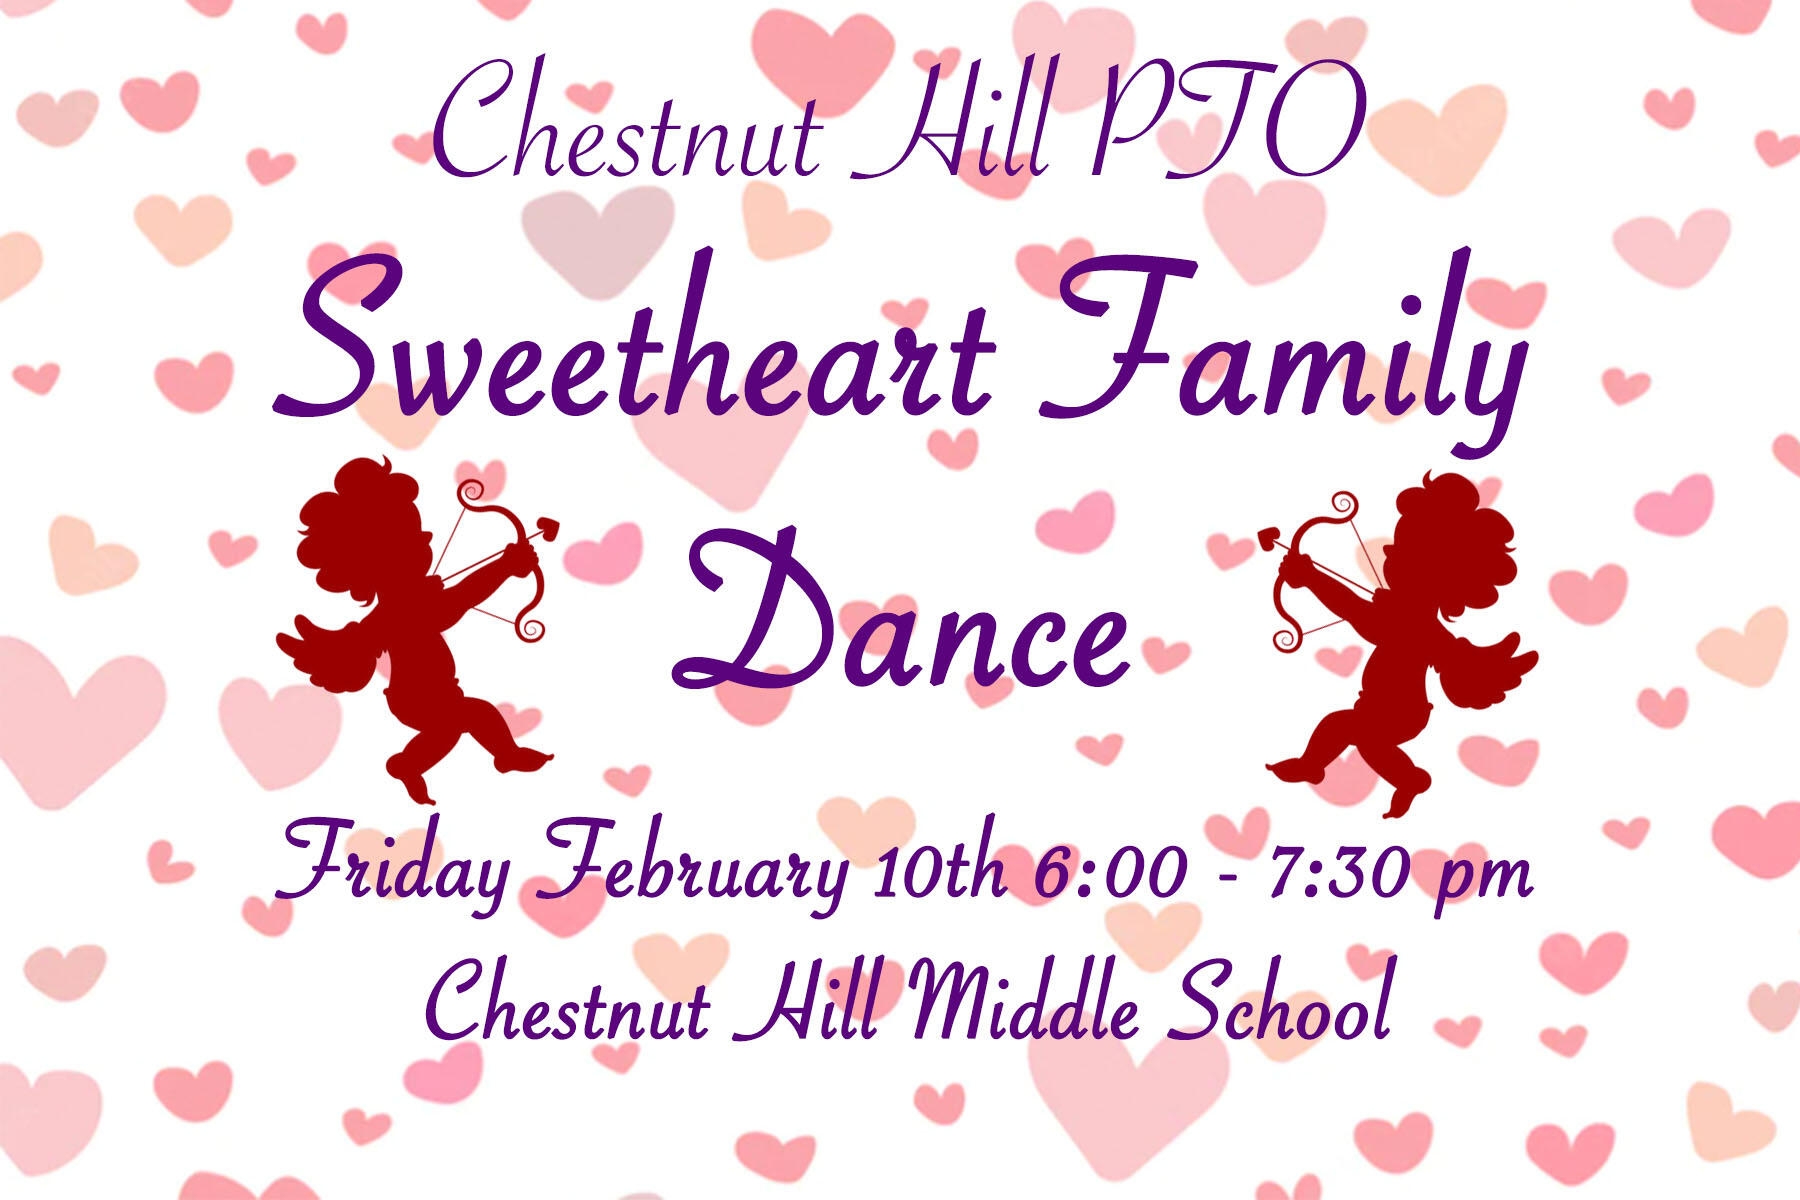 Chestnut PTO Valentine Dance Friday February 10 6:00 - 7:30